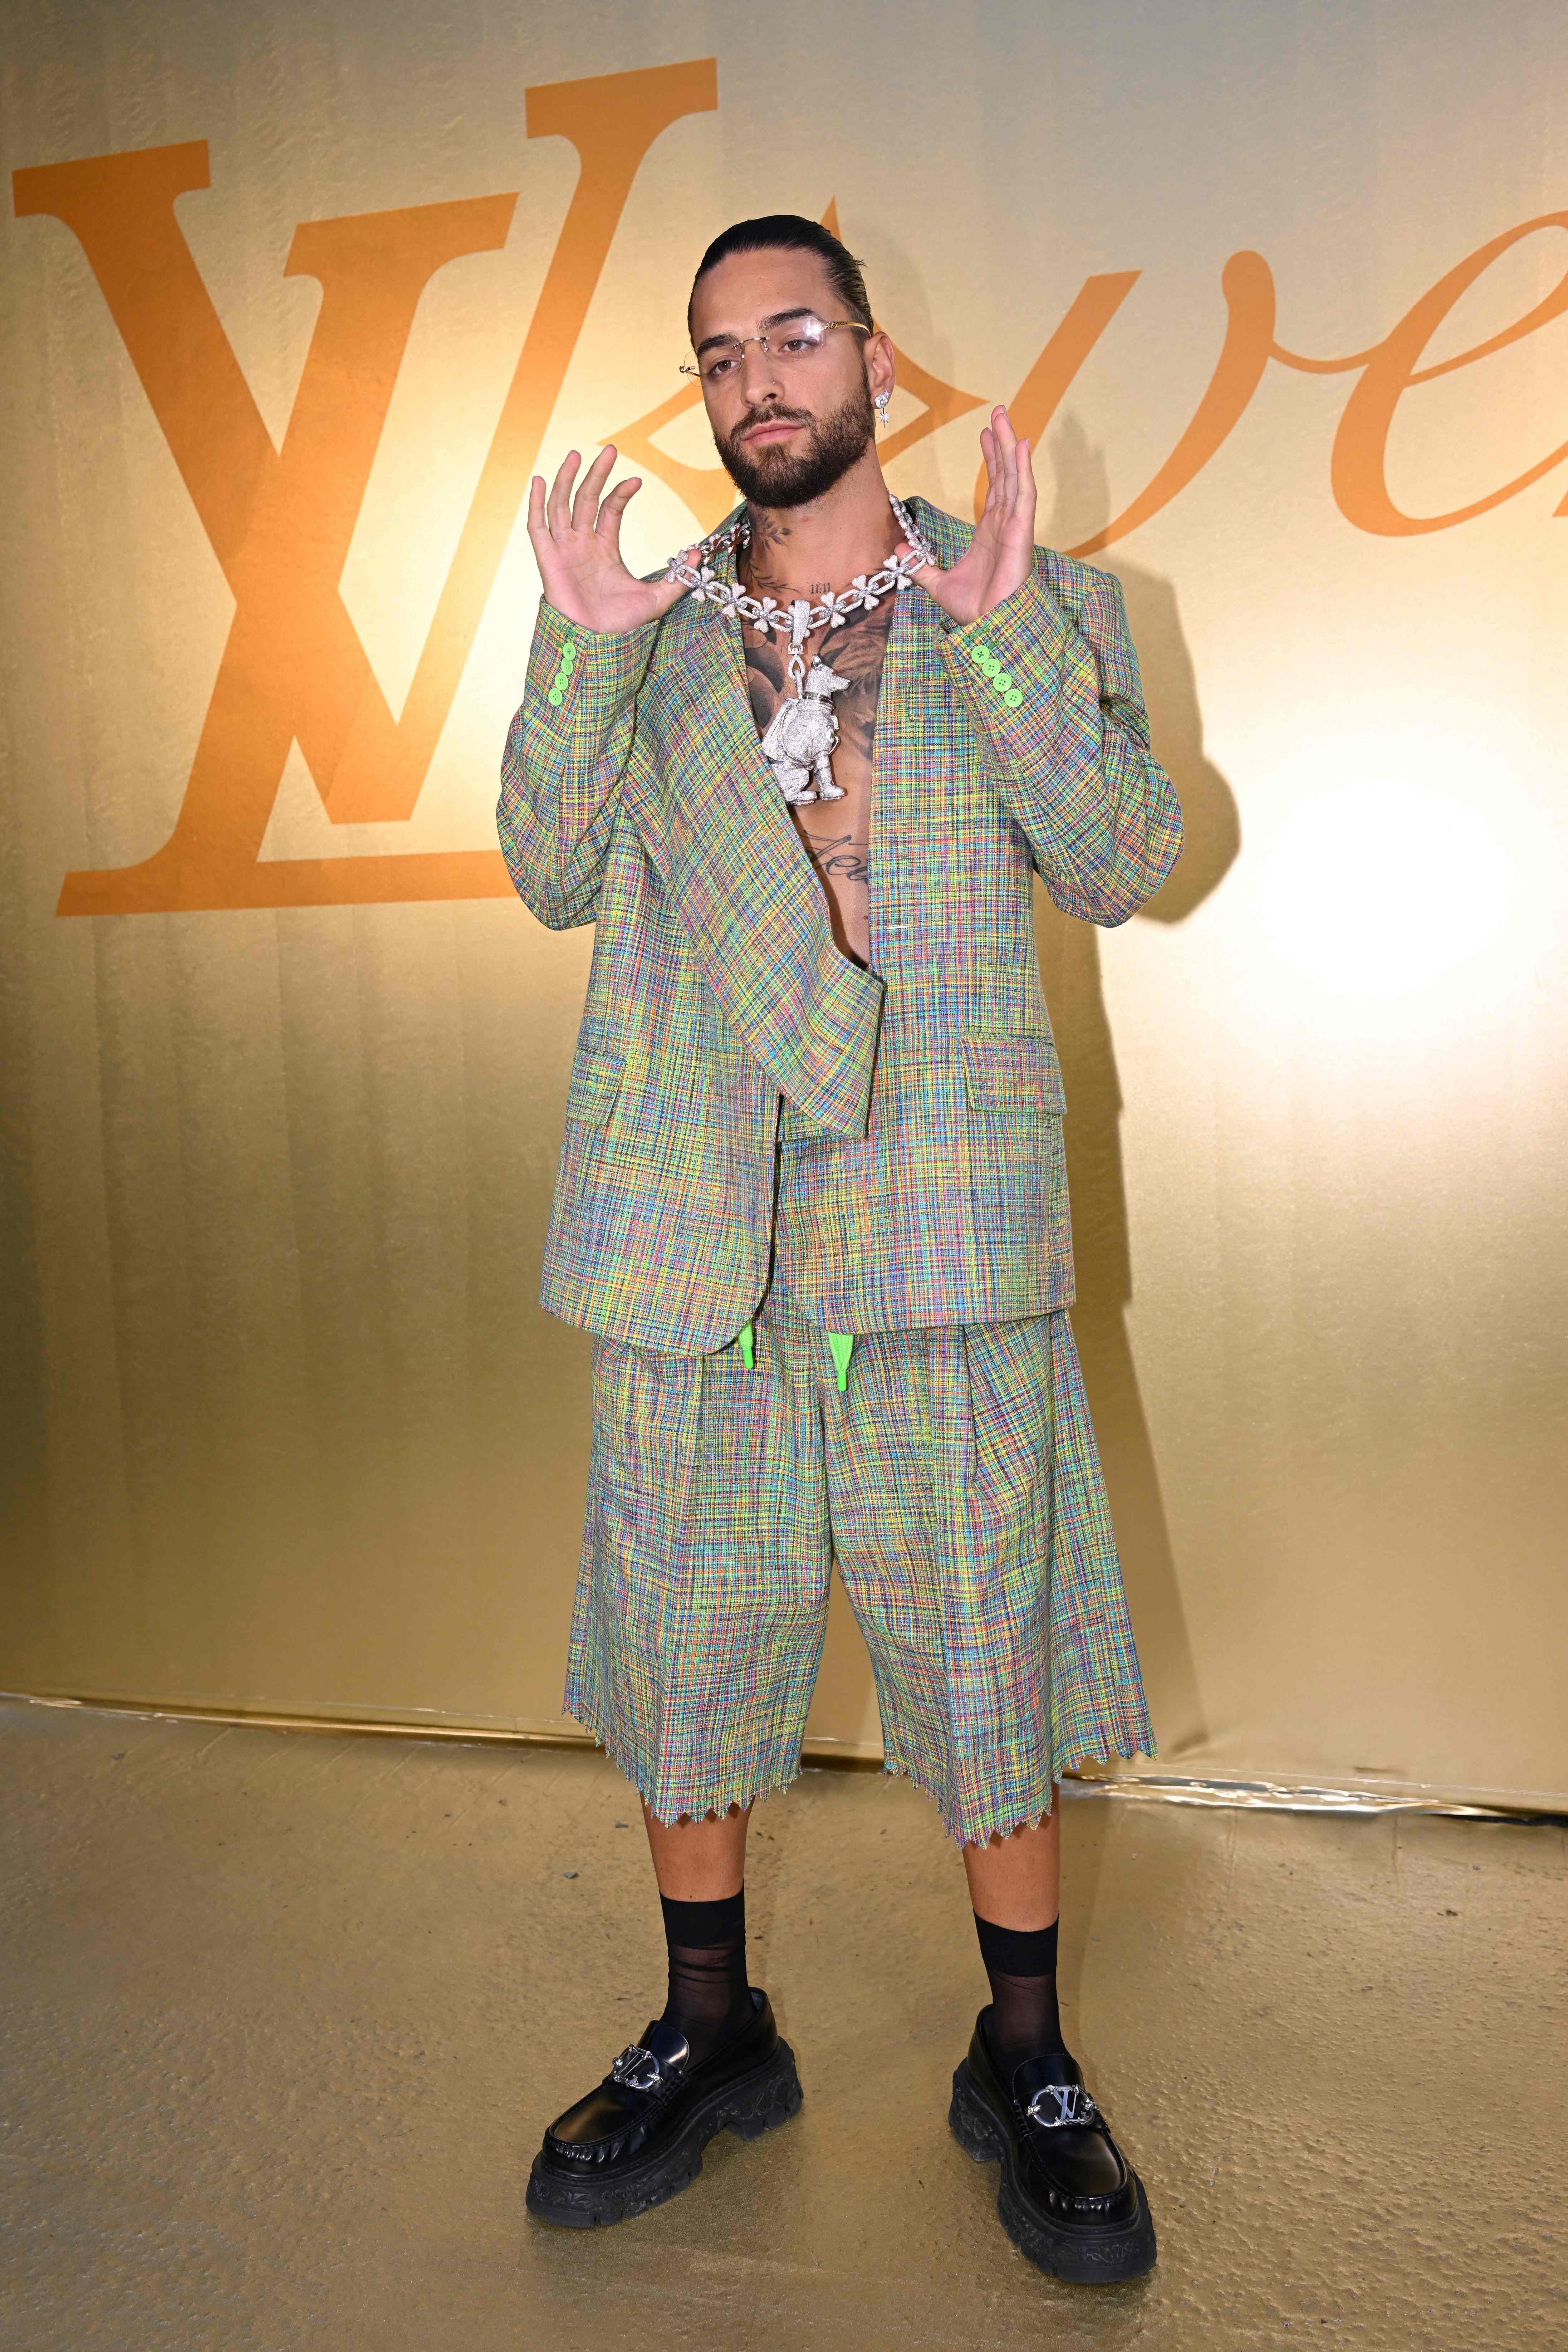 At Louis Vuitton, Pharrell Williams rewrites fashion for celebrity age -  The Washington Post